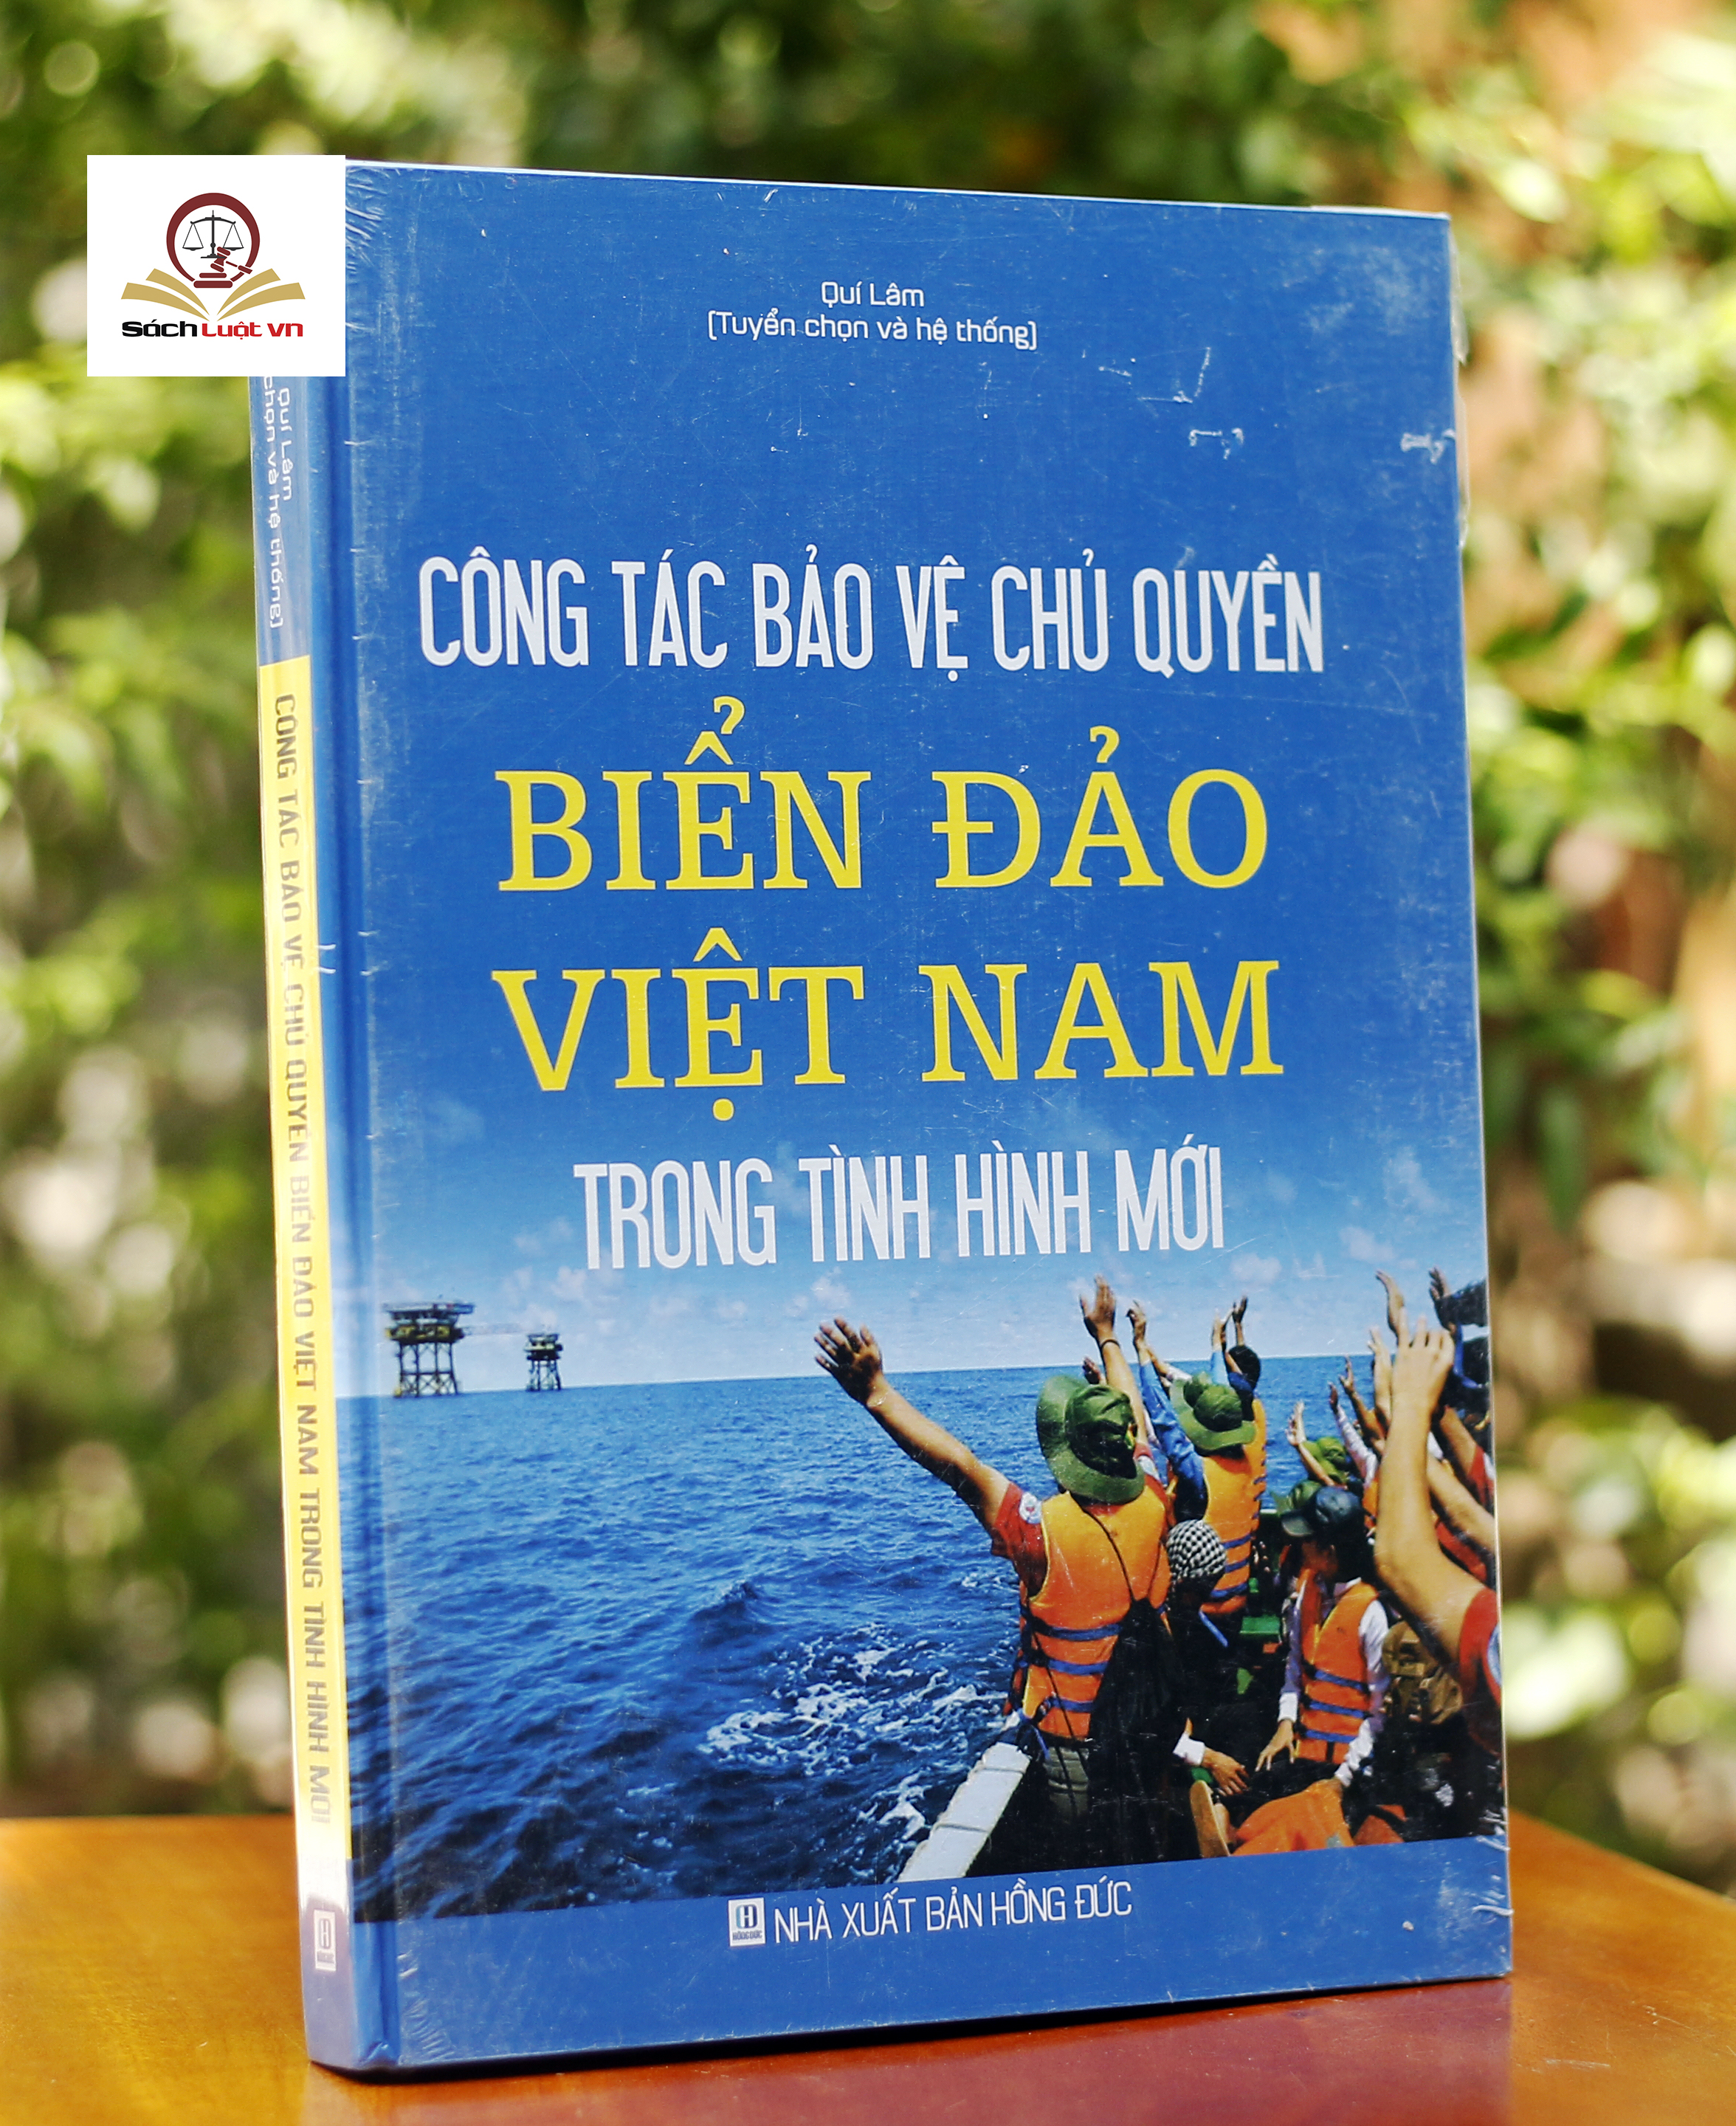 Công tác bảo vệ chủ quyền biển, đảo Việt Nam trong tình hình mới